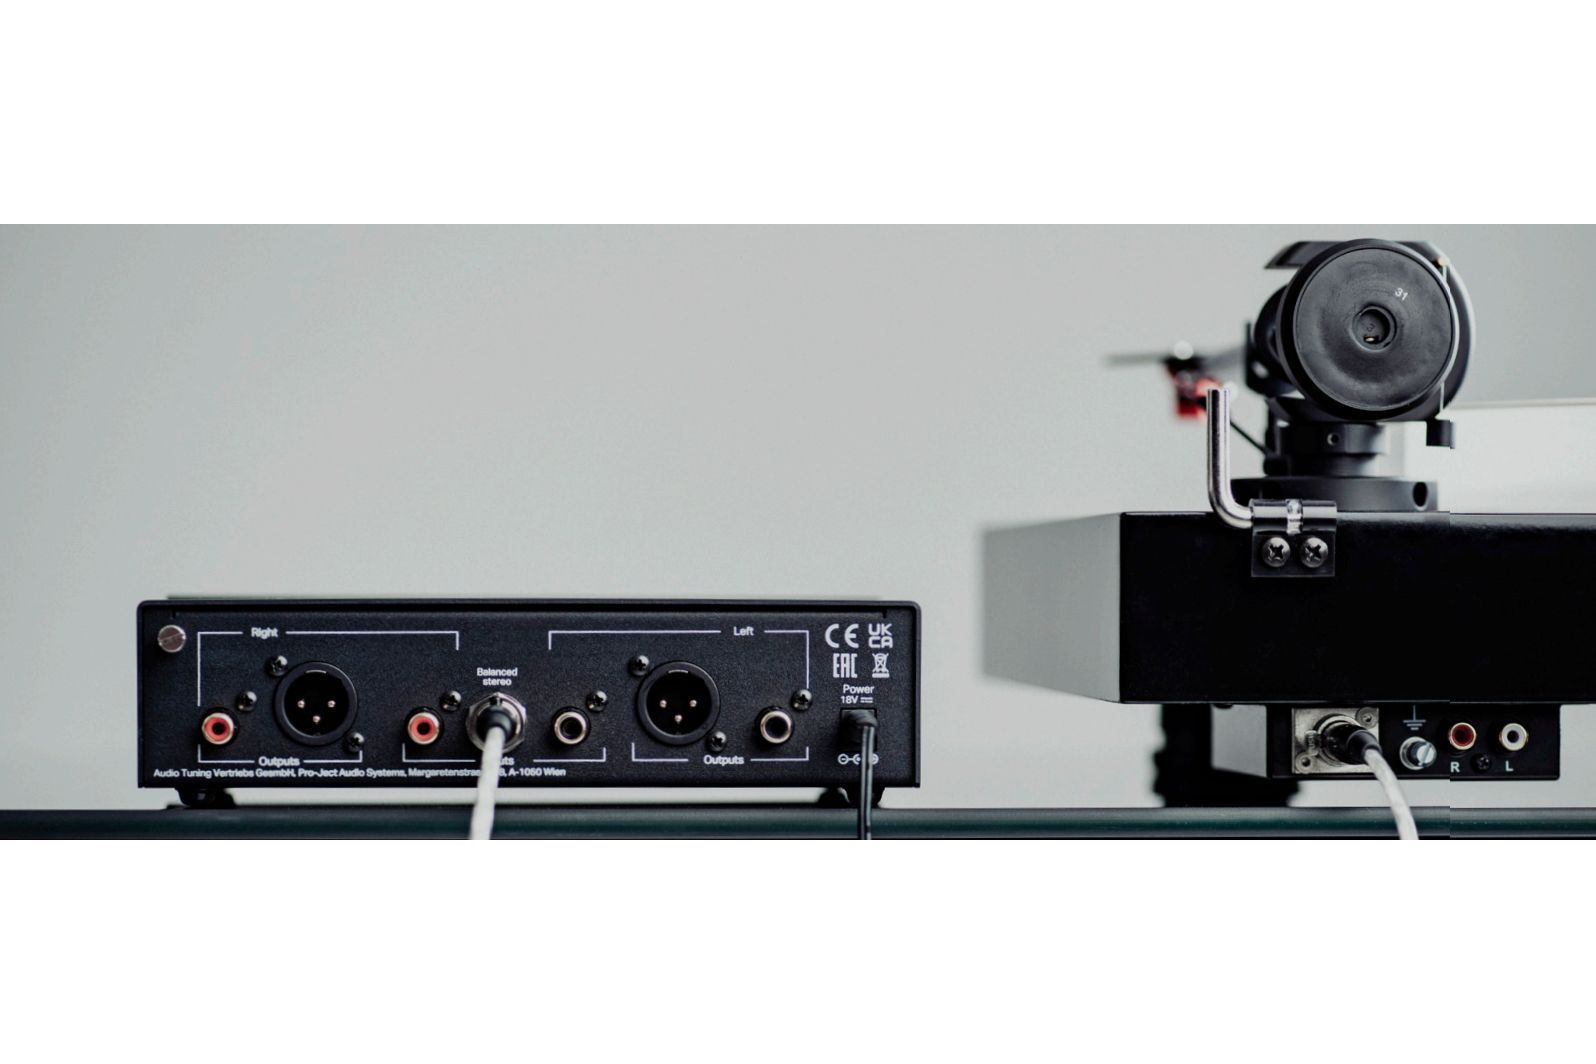 System/Paket Pro-Ject Audio X2 B & Phono Box S3 B Silver